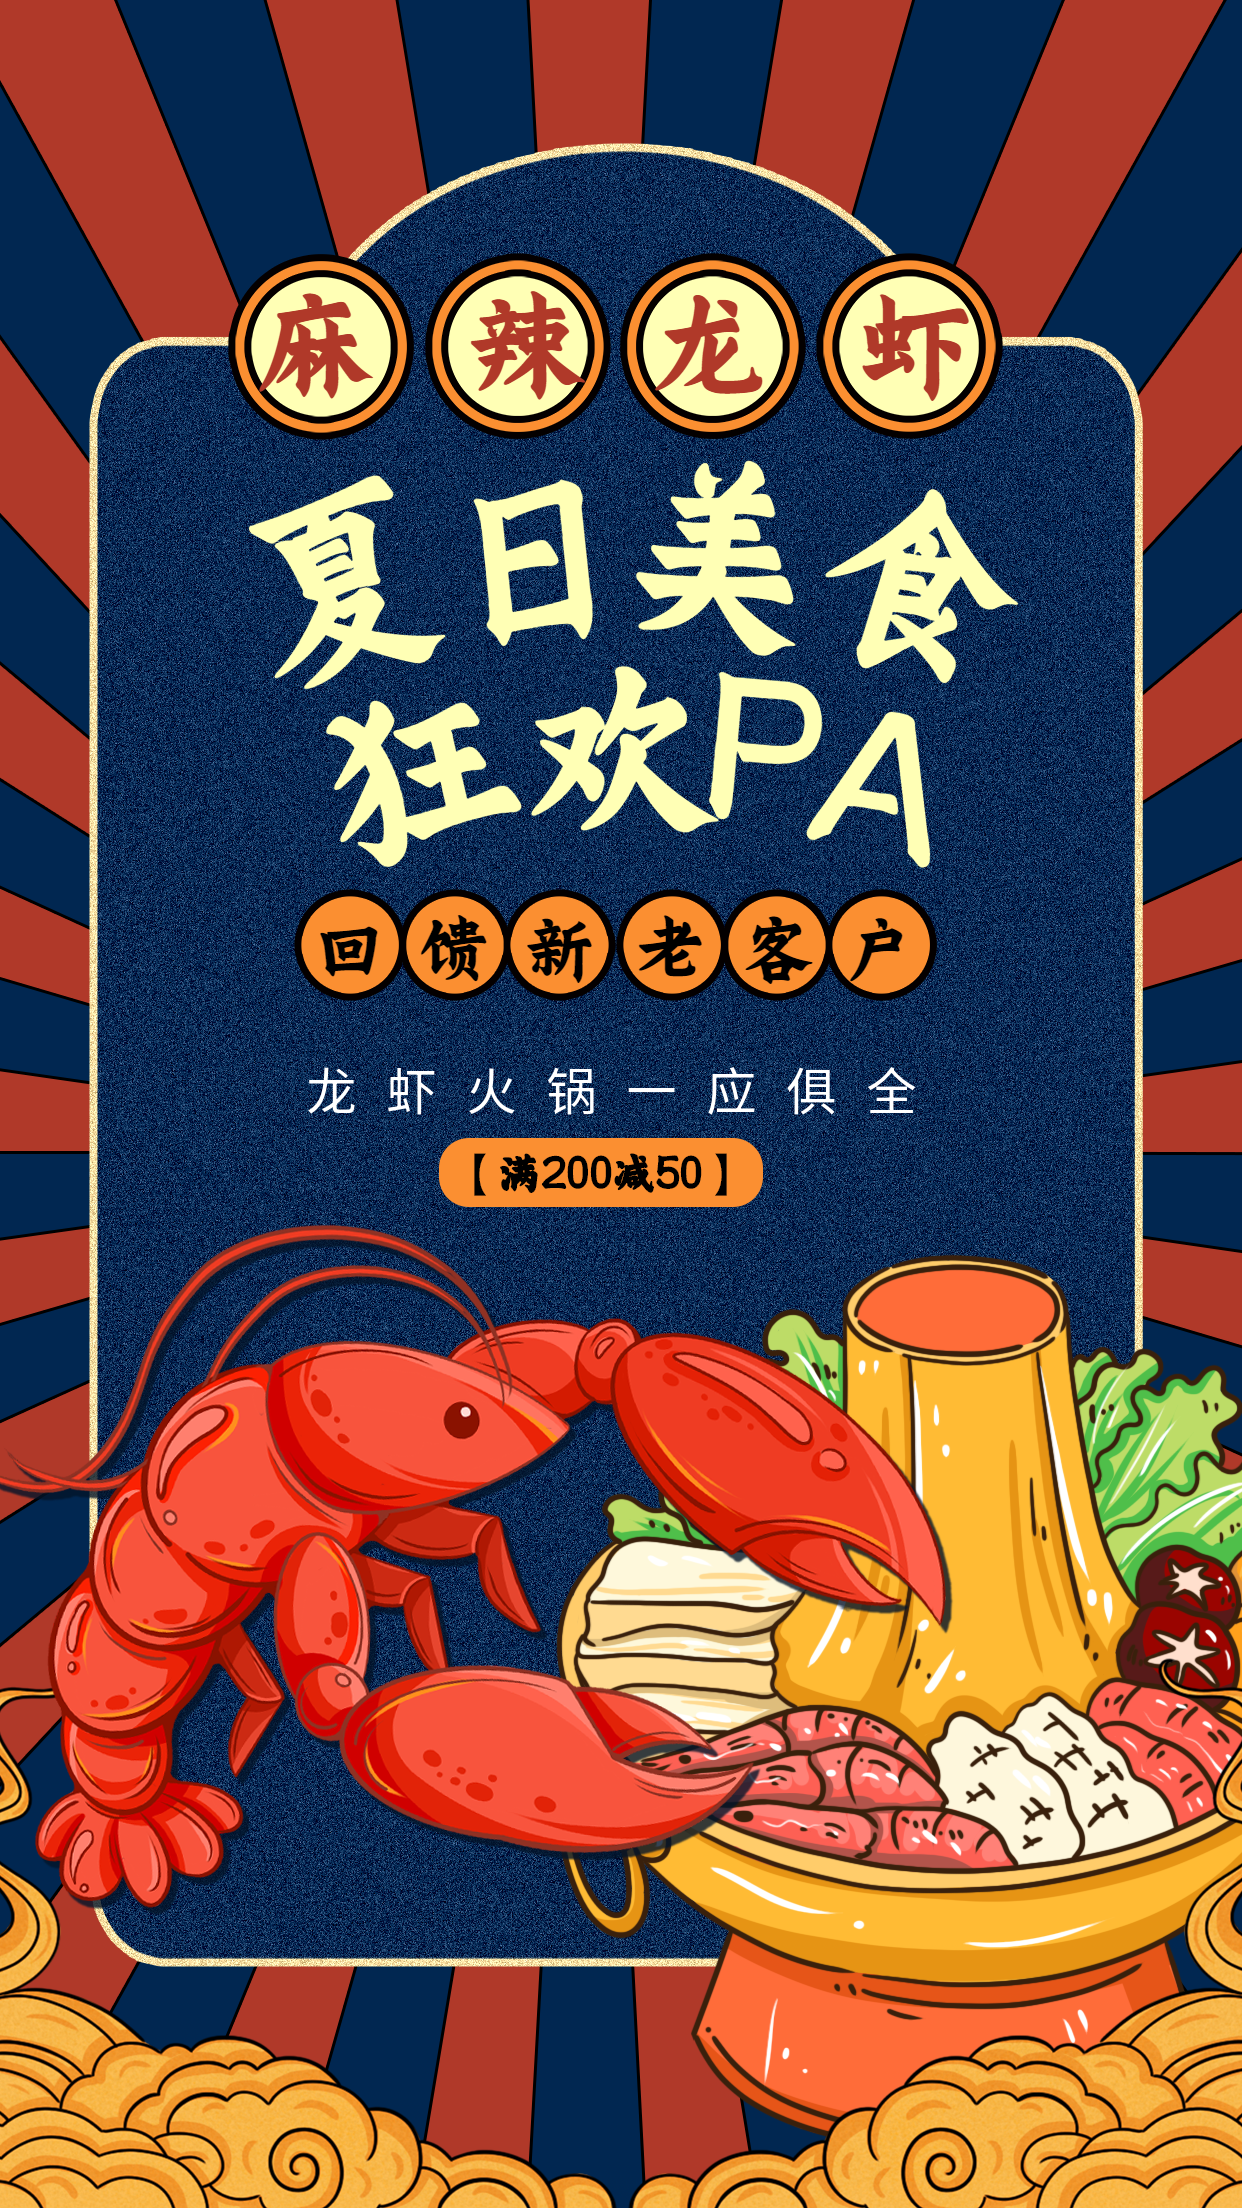 夏日美食狂欢小龙虾火锅活动宣传海报